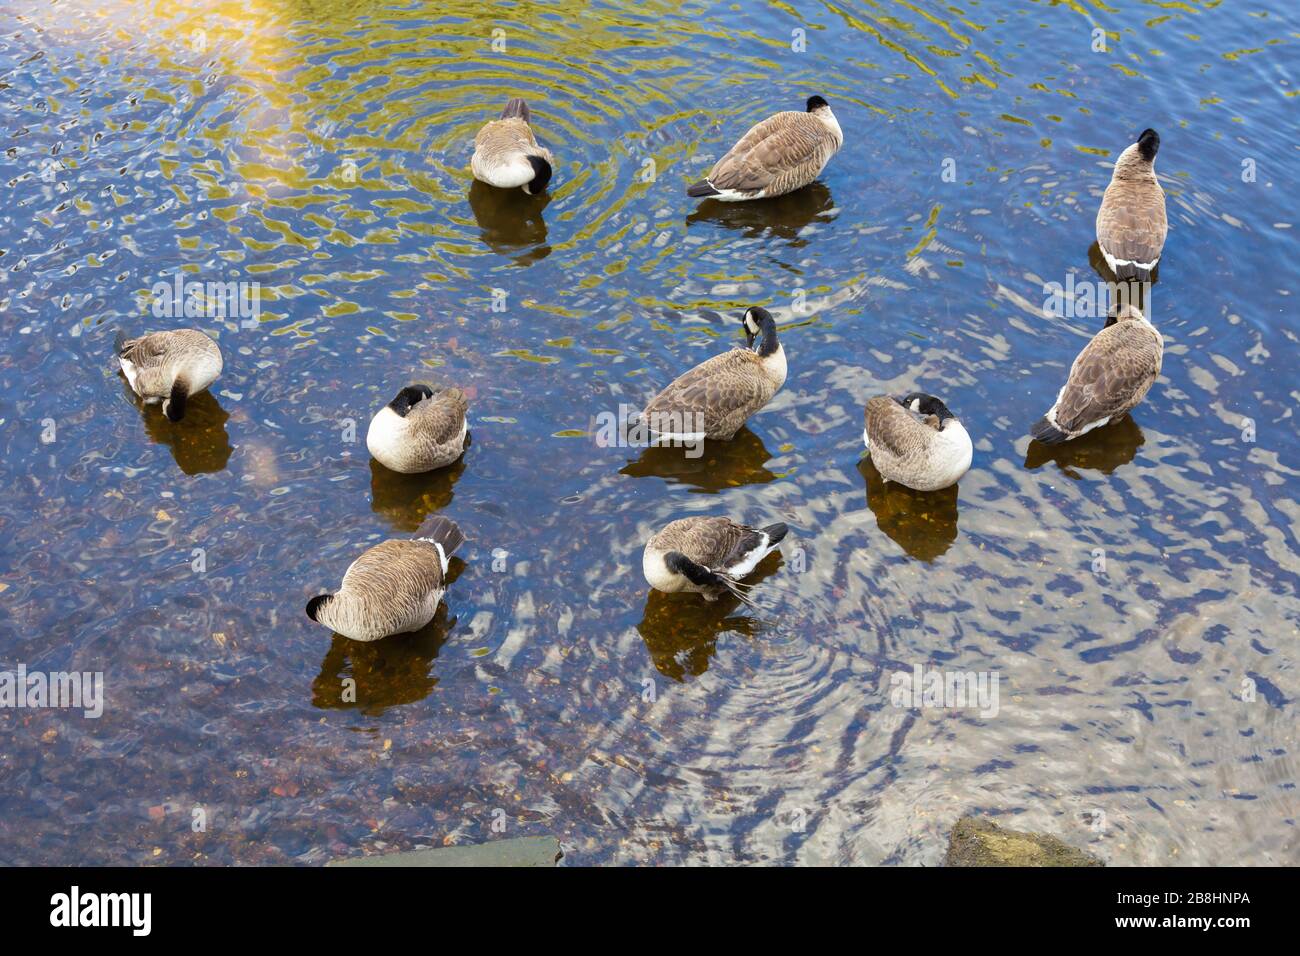 Ducks in preening, big cleaning. Lüneburg, Northern Germany. Enten beim putzen, großes Saubermachen. Lüneburg, Norddeutschland Stock Photo